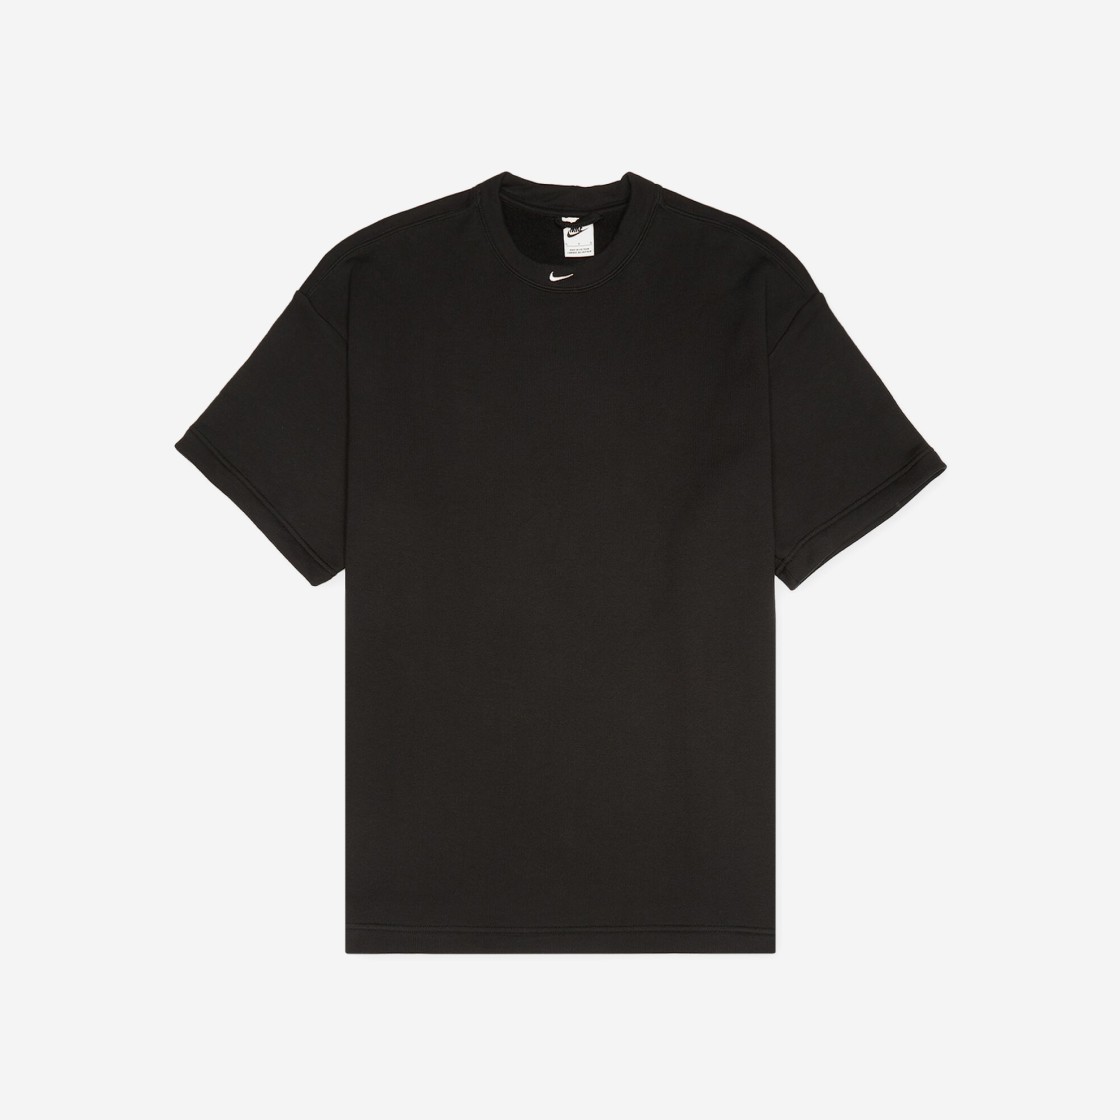 나이키 NSW 서카 프렌치 테리 티셔츠 블랙 - 아시아 DX0188-010